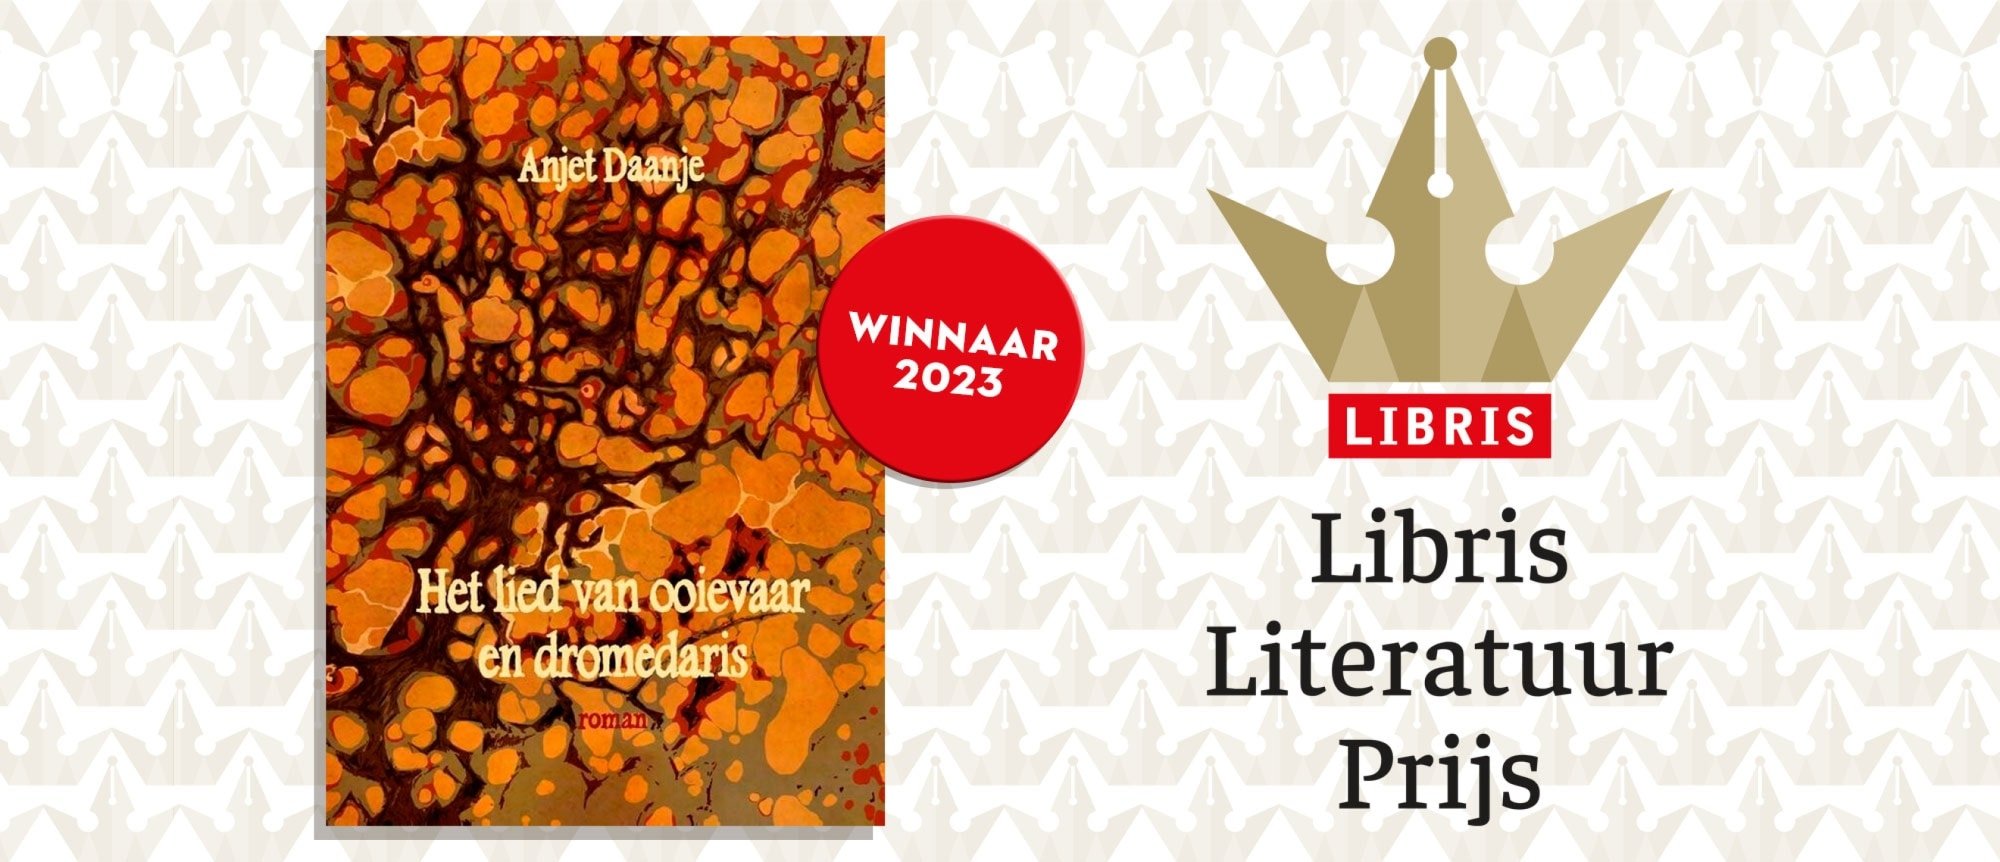 Anjet Daanje wint de Libris Literatuur Prijs 2023